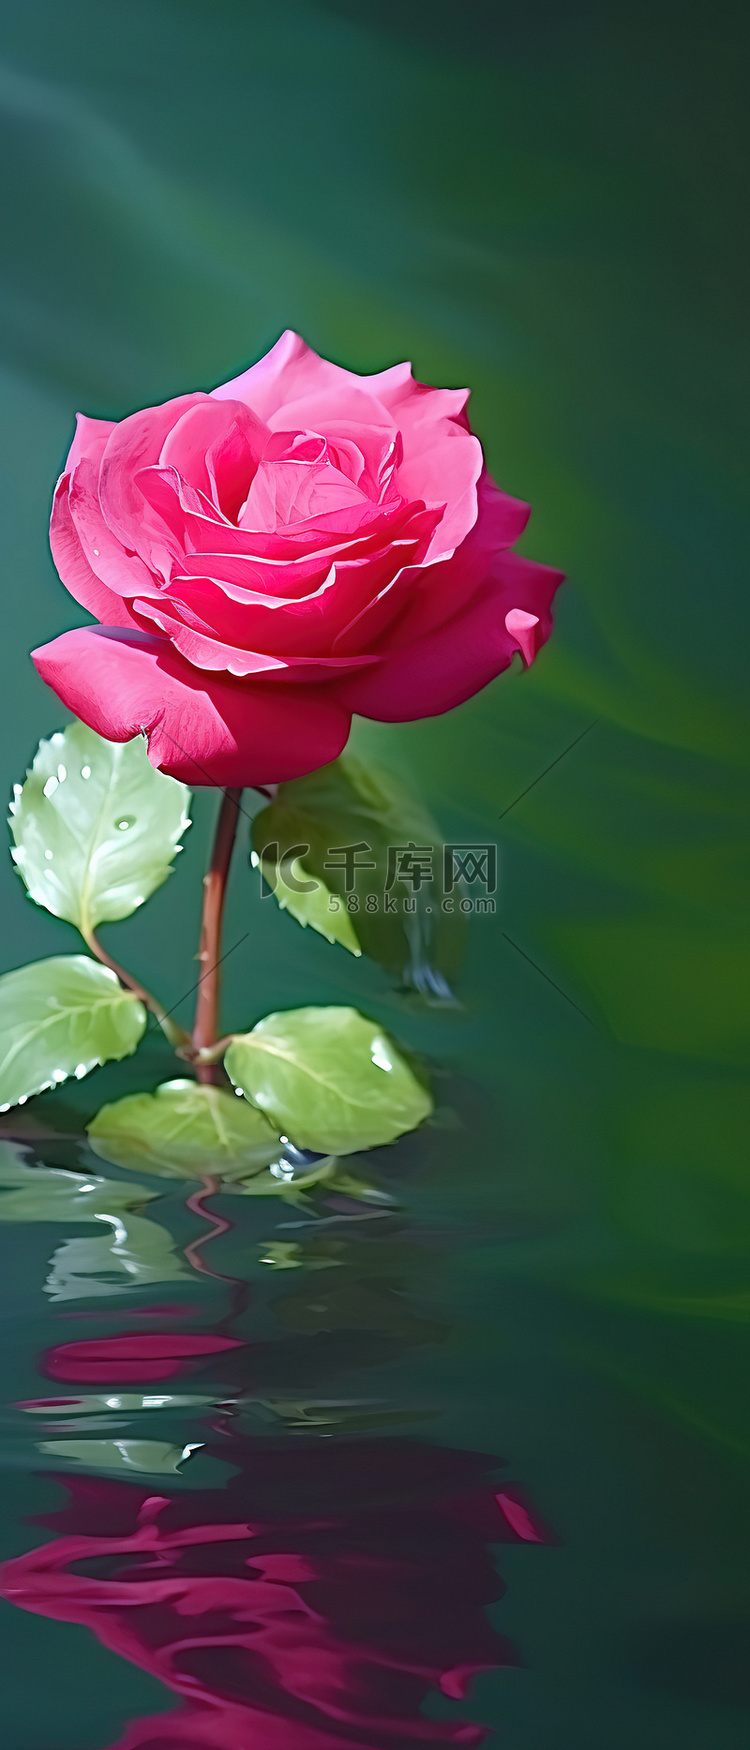 水面上的红玫瑰 iPhone 5 背景